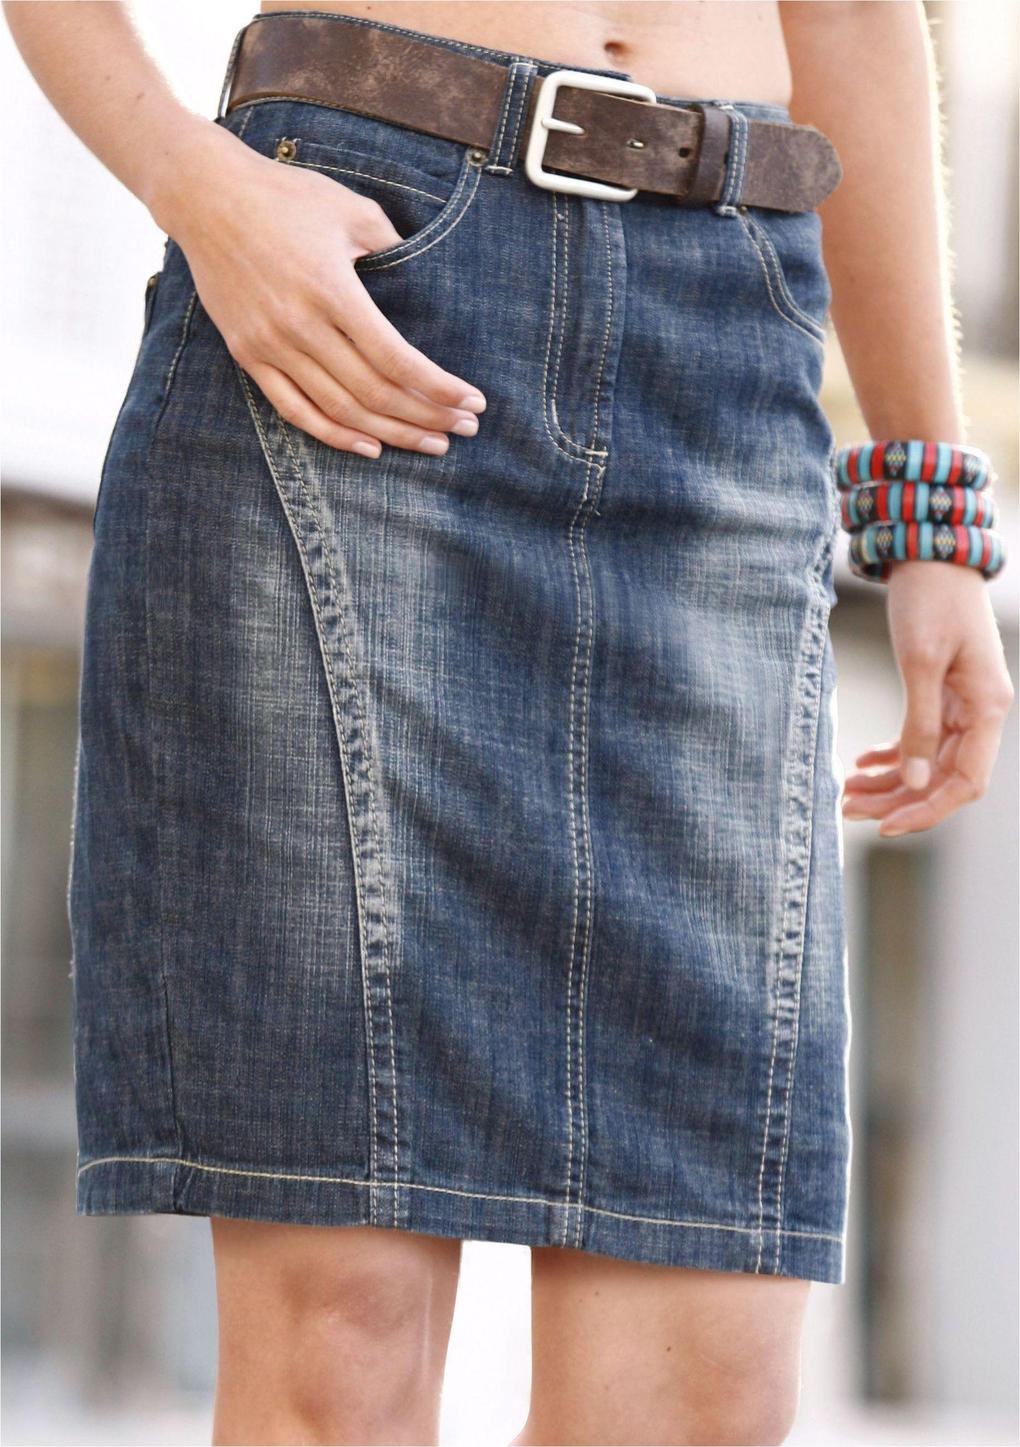 Юбка из джинсов своими руками: фото этапов с описанием работы